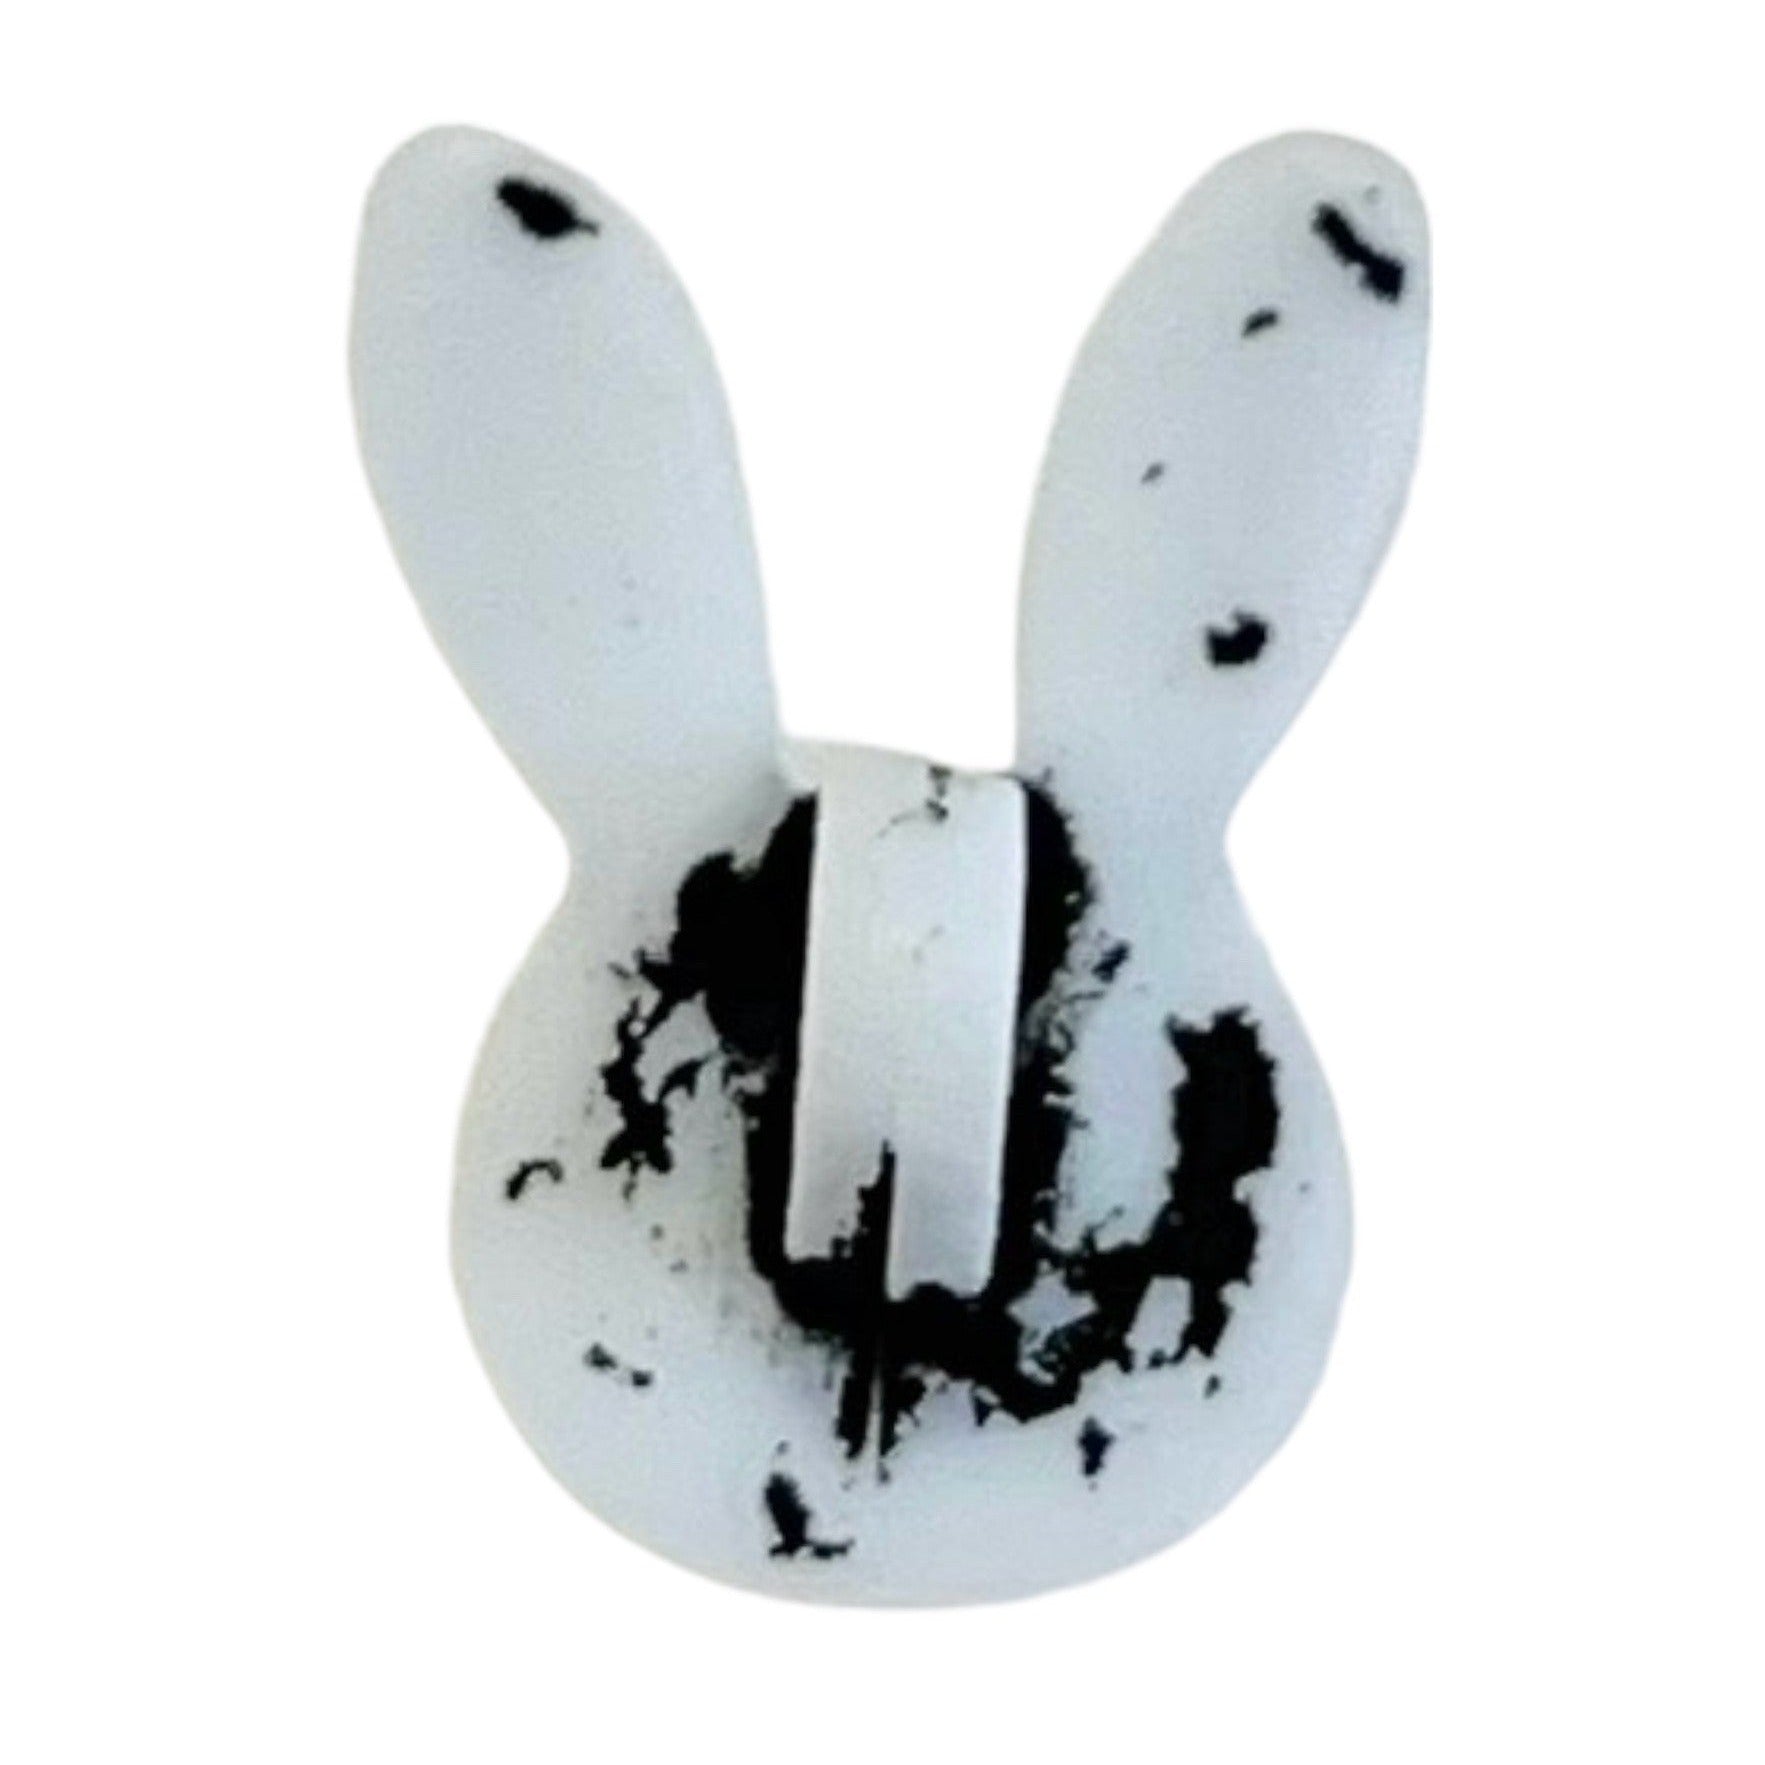 Bunny with Ears Bulk Button - 0